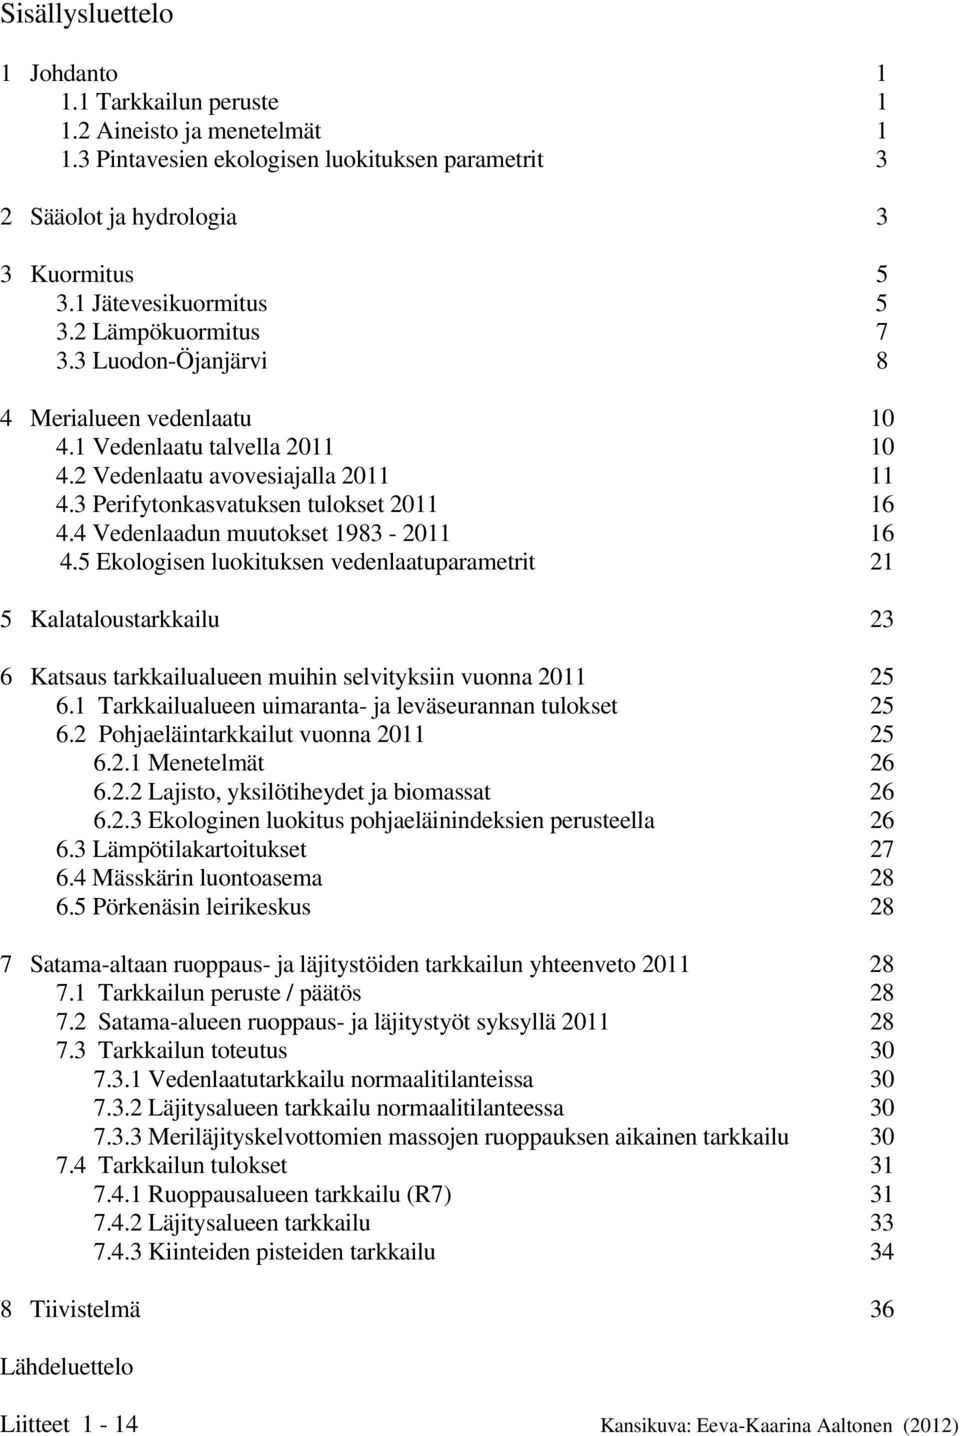 3 Perifytonkasvatuksen tulokset 2011 16 4.4 Vedenlaadun muutokset 1983-2011 16 4.